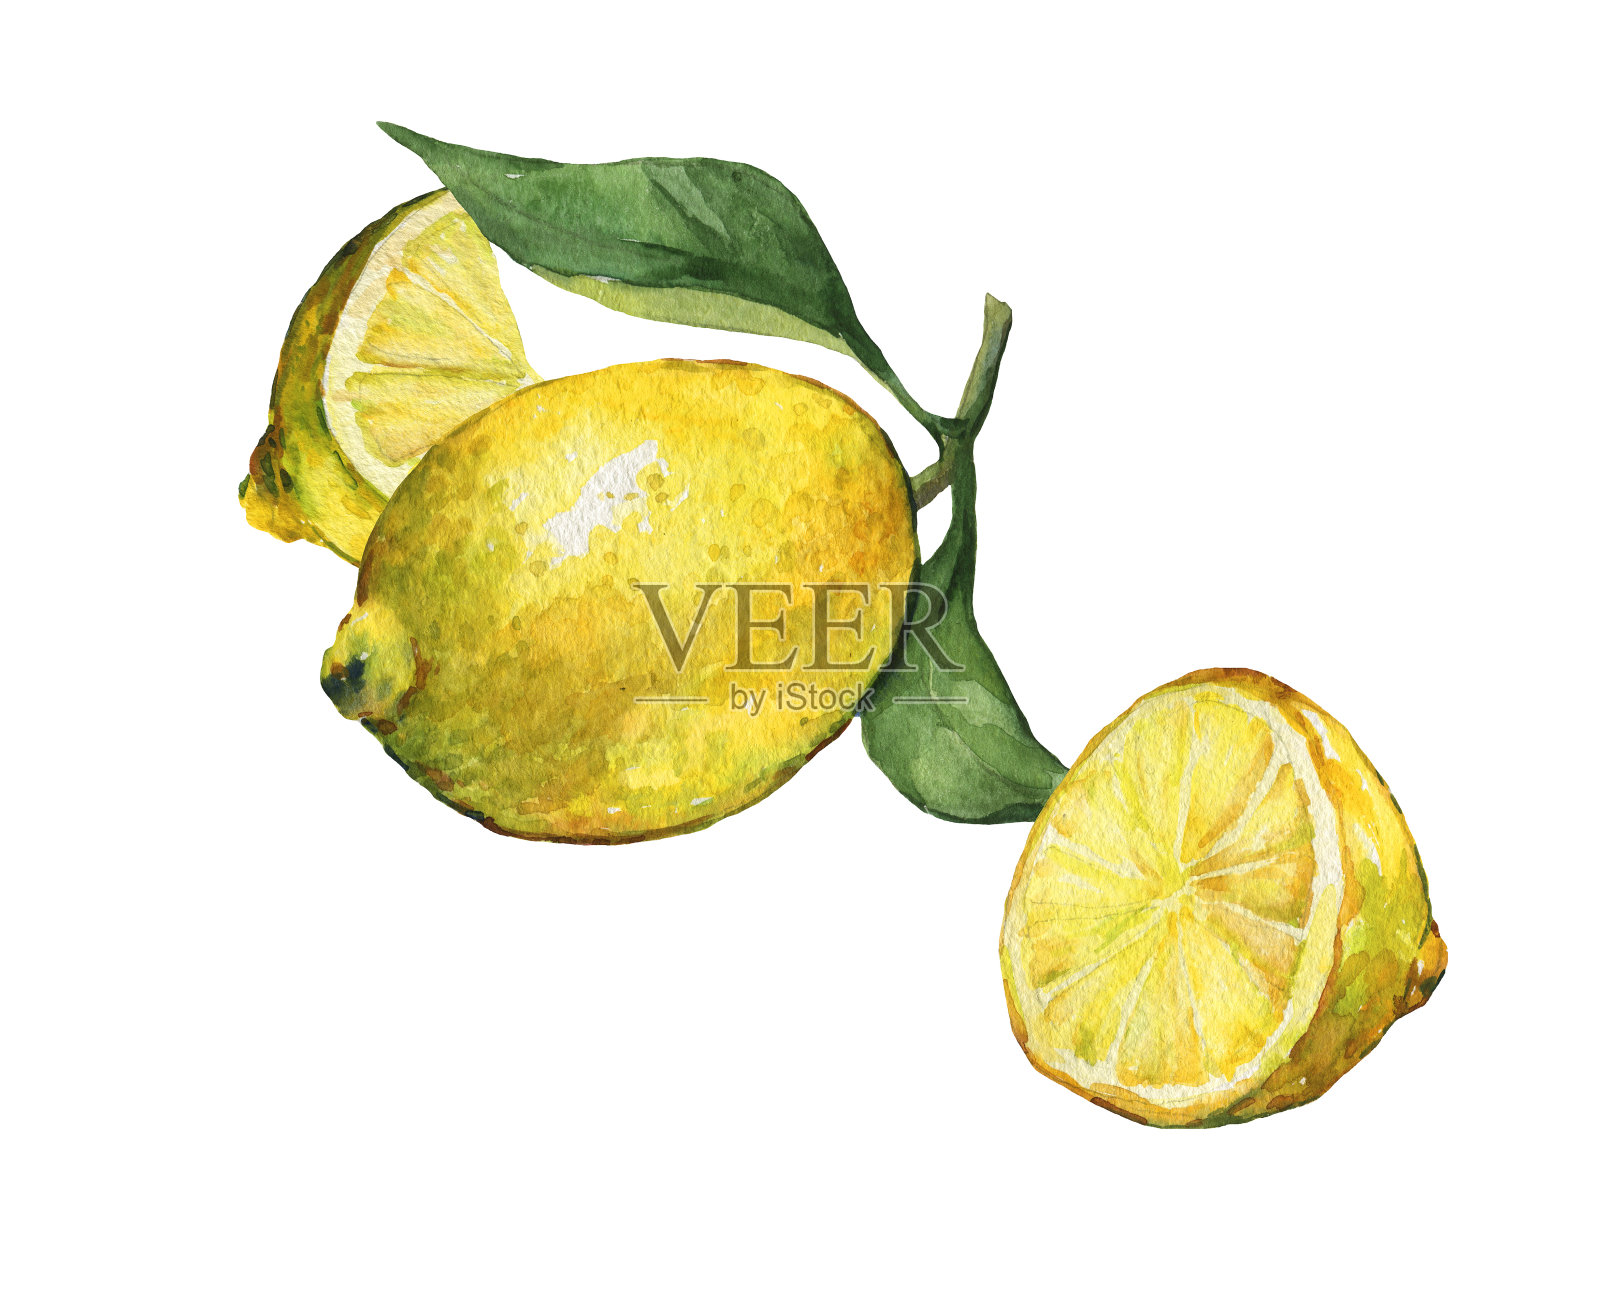 将新鲜的柑橘类水果和柠檬片与绿叶一起排列。手绘水彩画在白色的背景。插画图片素材